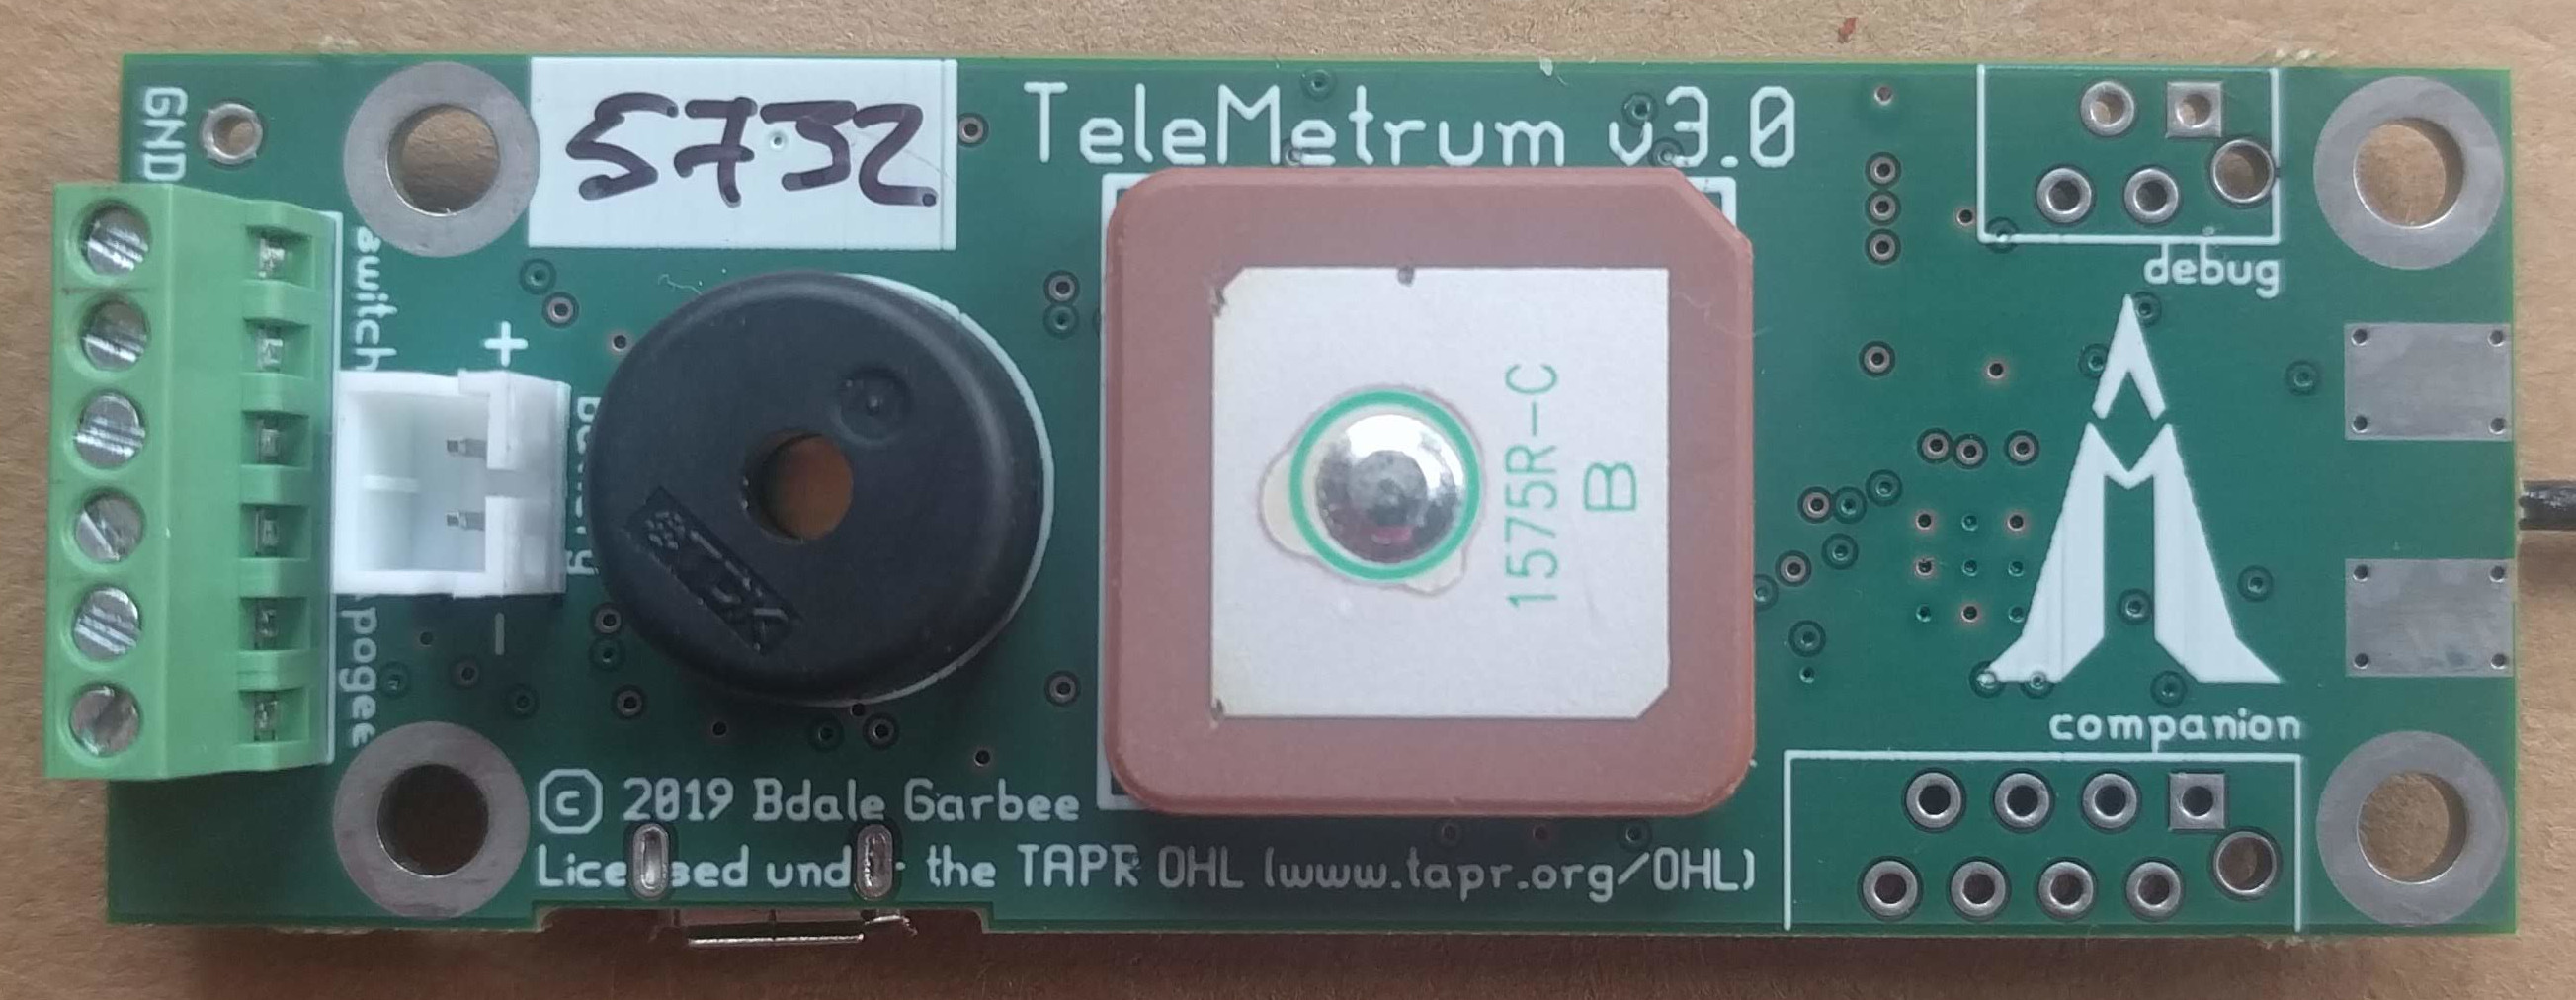 TeleMetrum/v3.0/telemetrum-v3.0-th.jpg